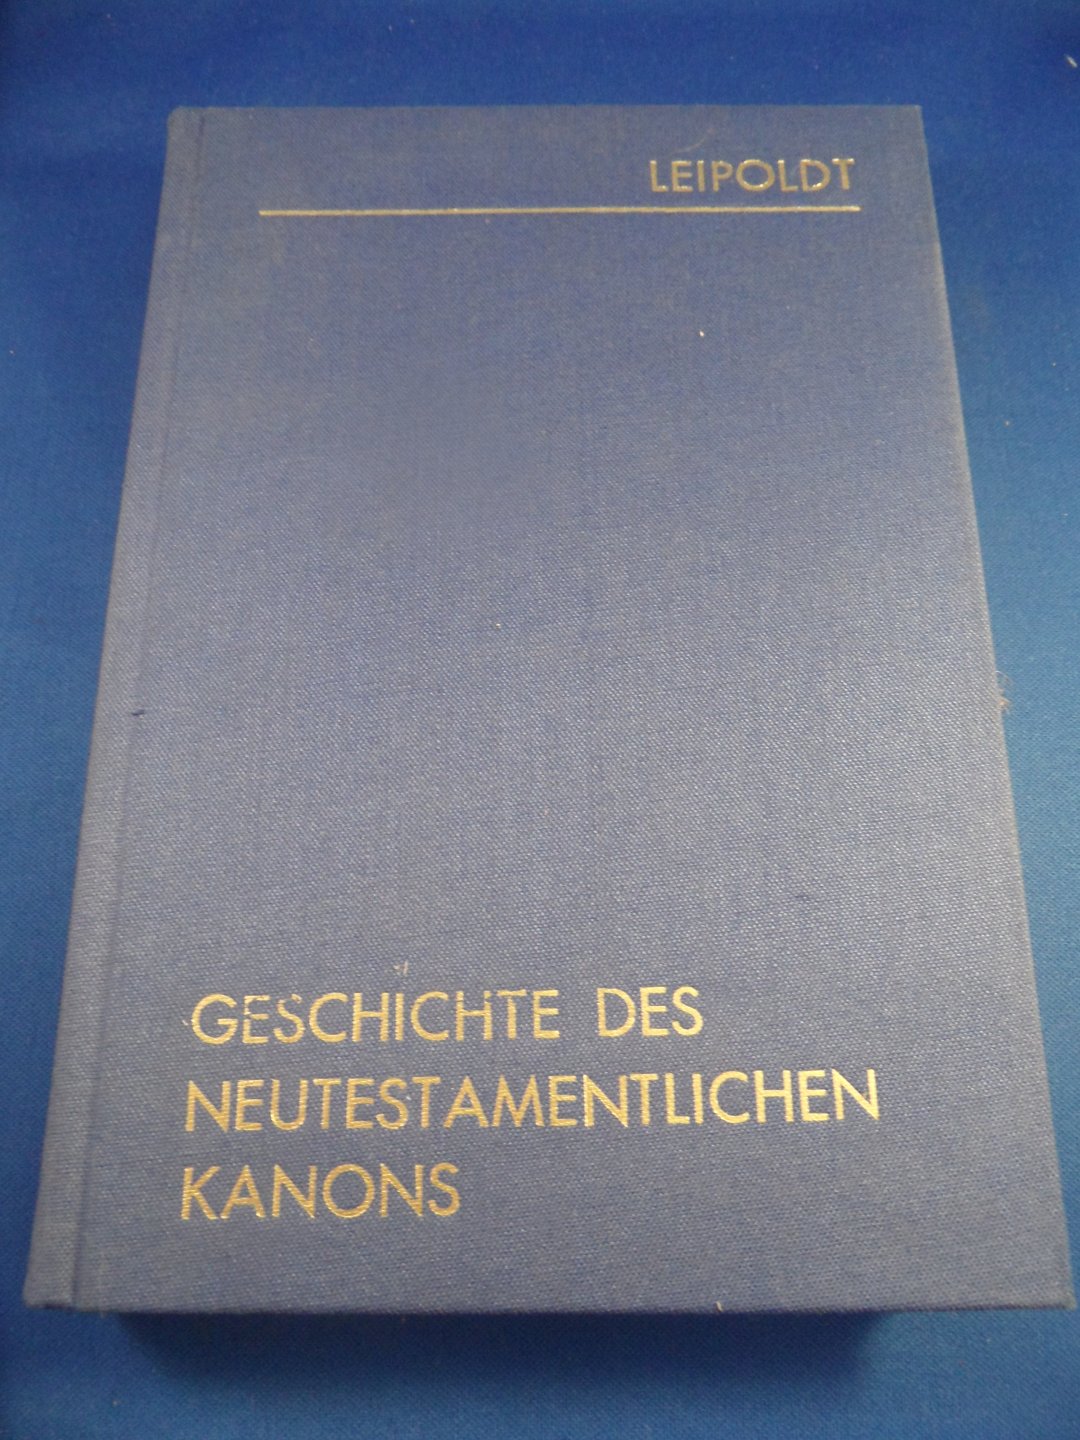 Leipoldt, Johannes - Geschichte des neutestamentlichen Kanons. 2 Volumes in 1. Volume 1: Die Entstehung. Volume 2: Mittelalter und Neuzeit.